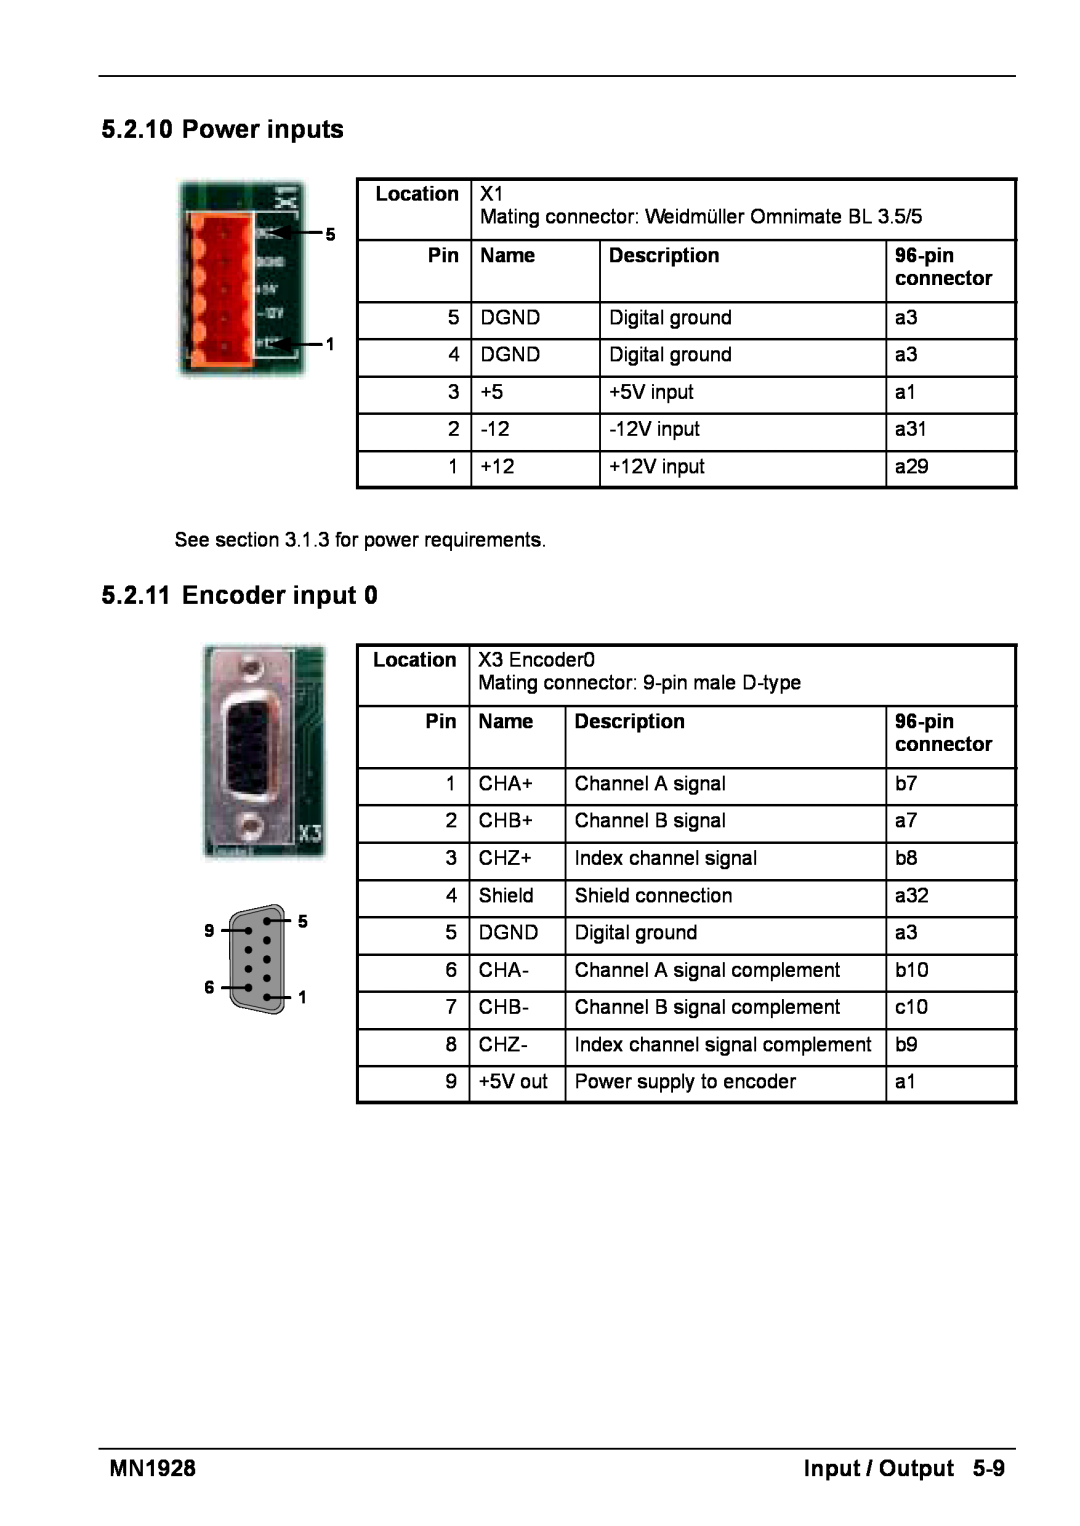 Baldor MN1928 installation manual Input / Output, Location, Name, Description, 96-pin, connector 